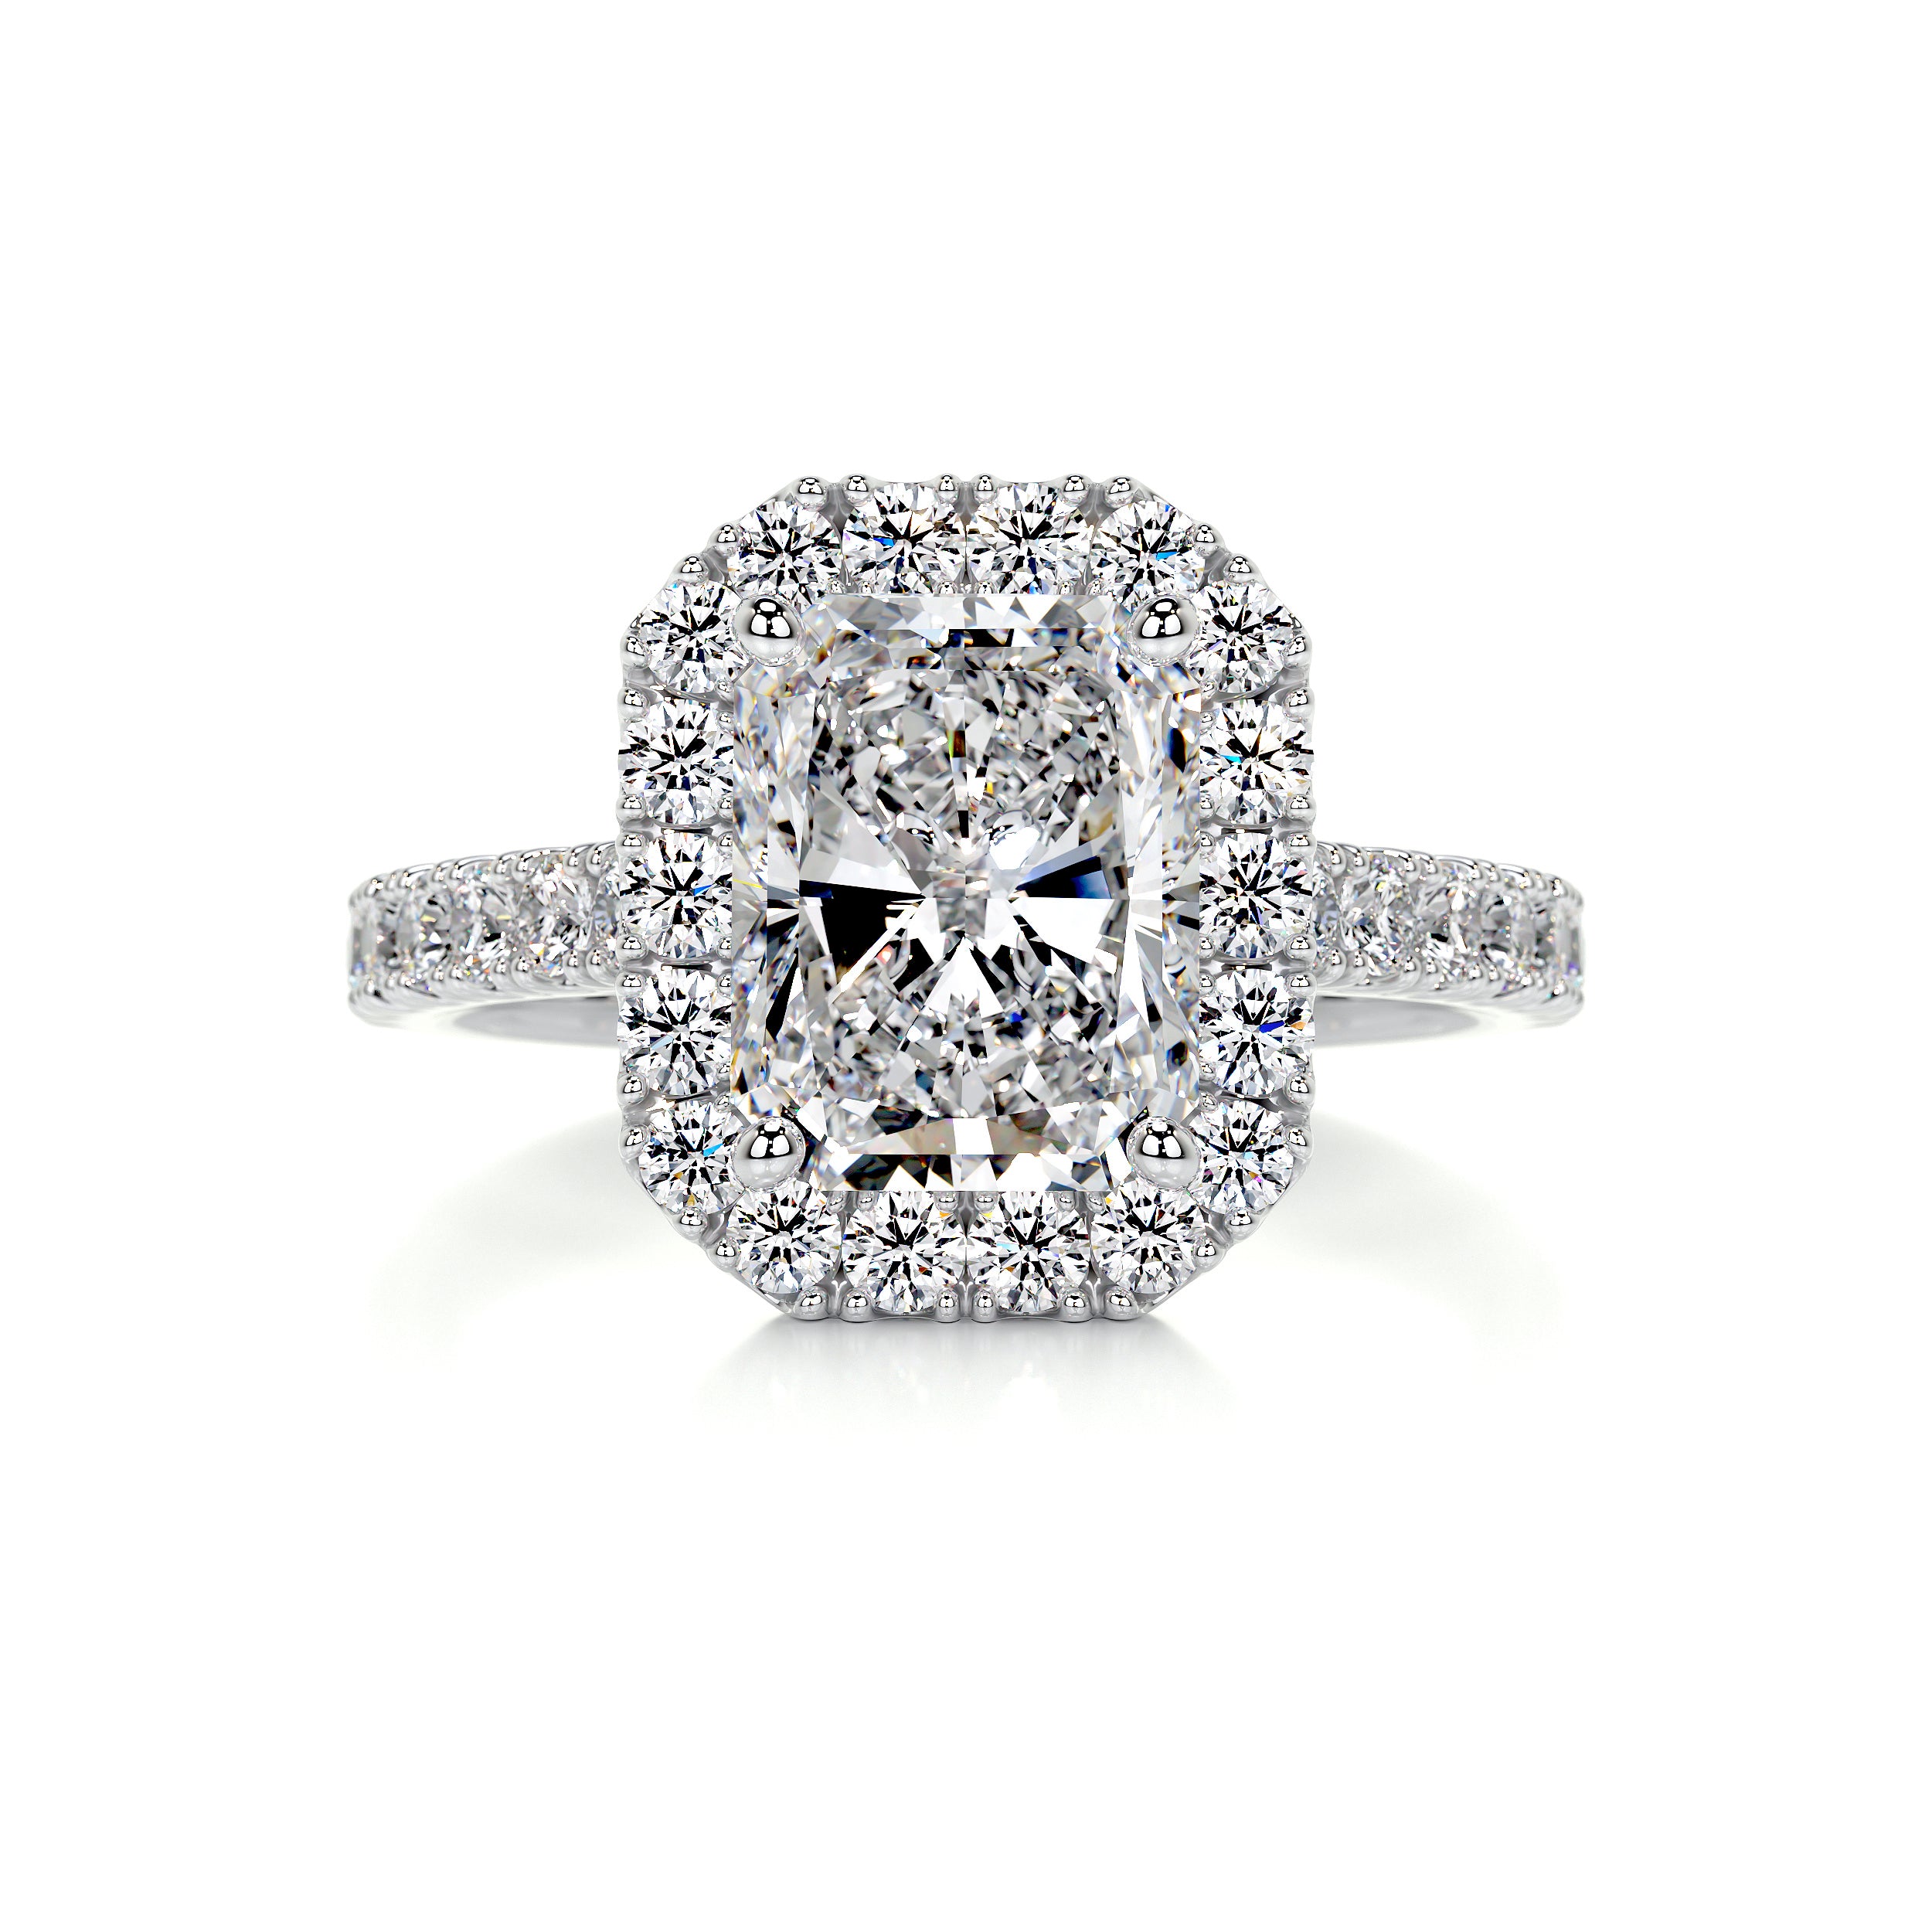 Andrea Diamond Engagement Ring -18K White Gold